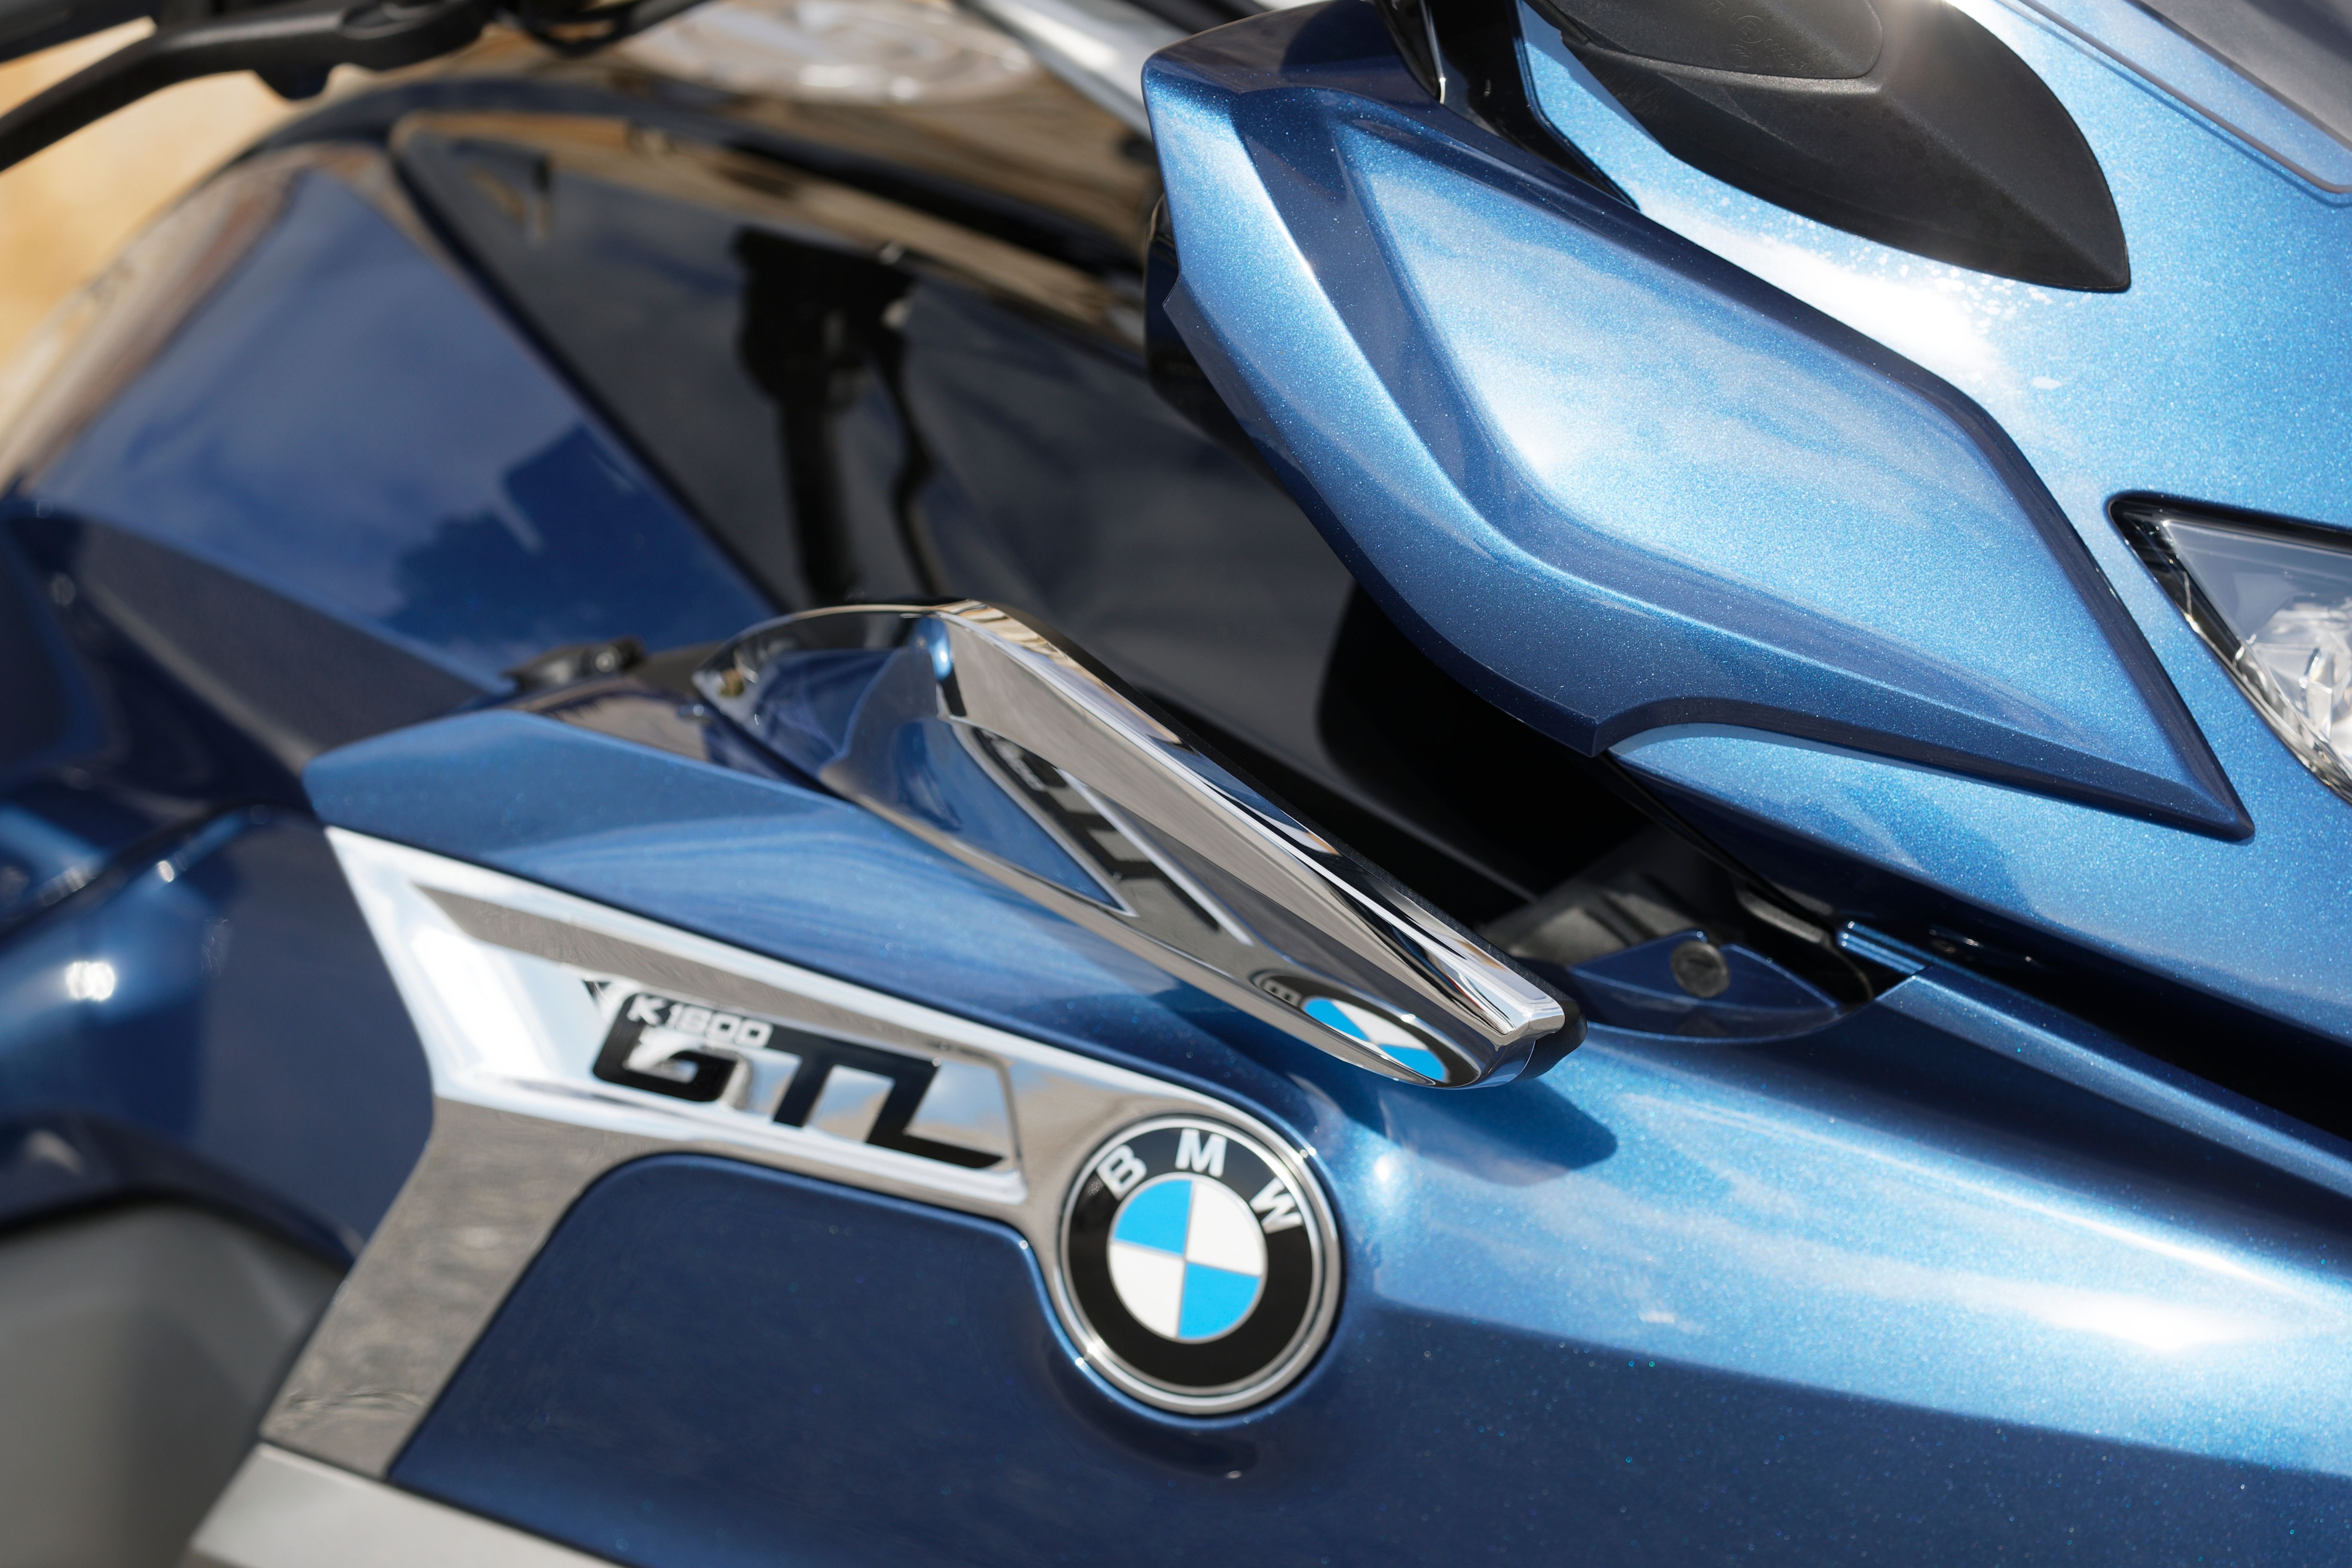 2022 BMW K 1600 GTL